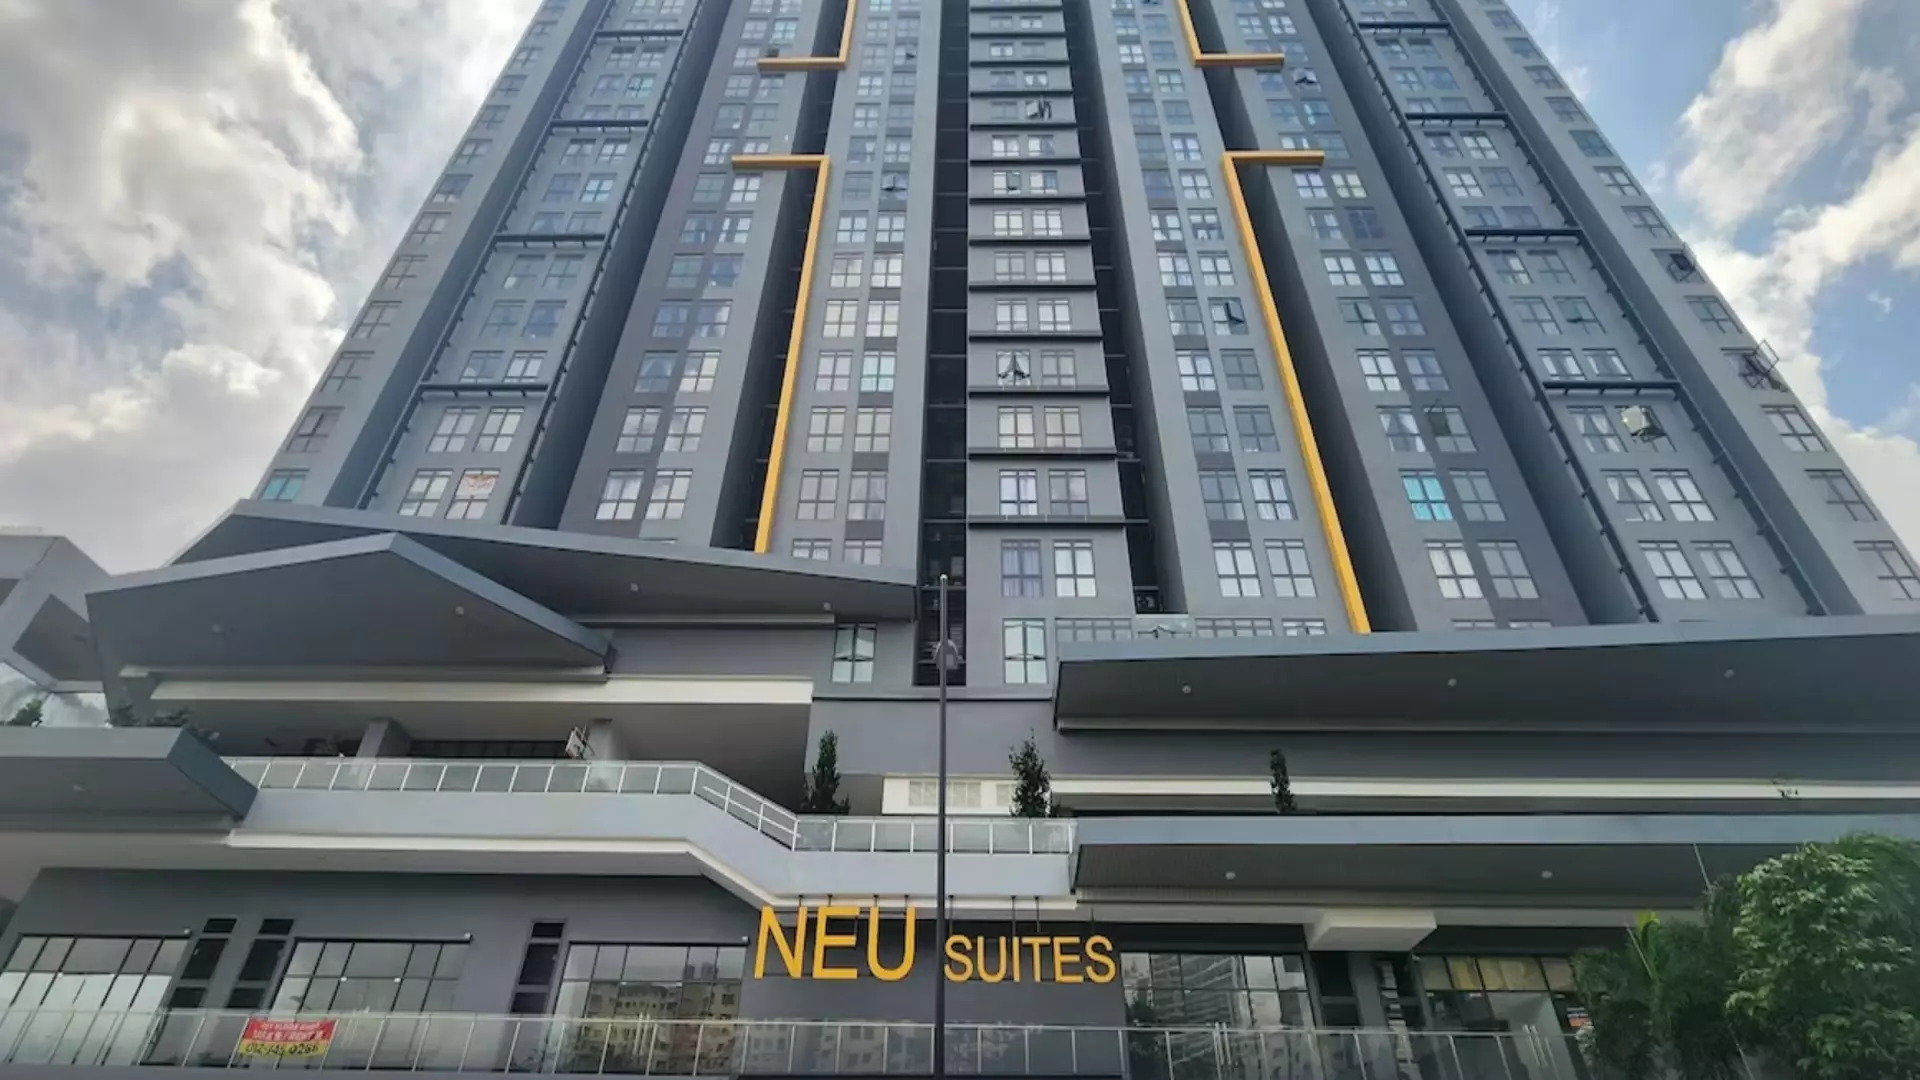 Bank Lelong Service Suite @ Neu Suites, 3rdNvenue, Ampang, Kuala Lumpur for Auction